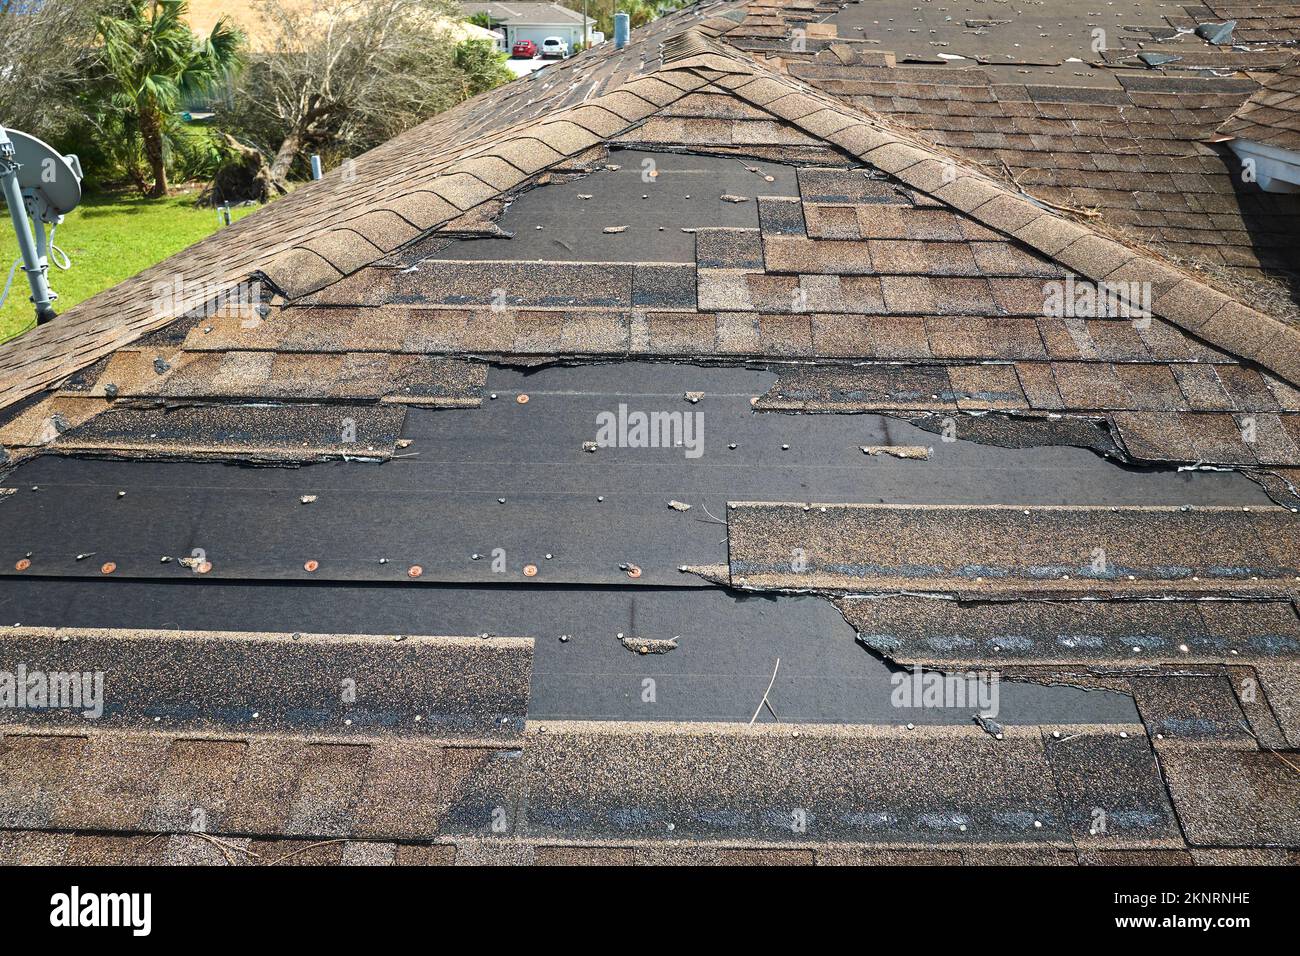 Beschädigtes Hausdach mit fehlenden Schindeln nach Hurrikan Ian in Florida. Folgen einer Naturkatastrophe Stockfoto